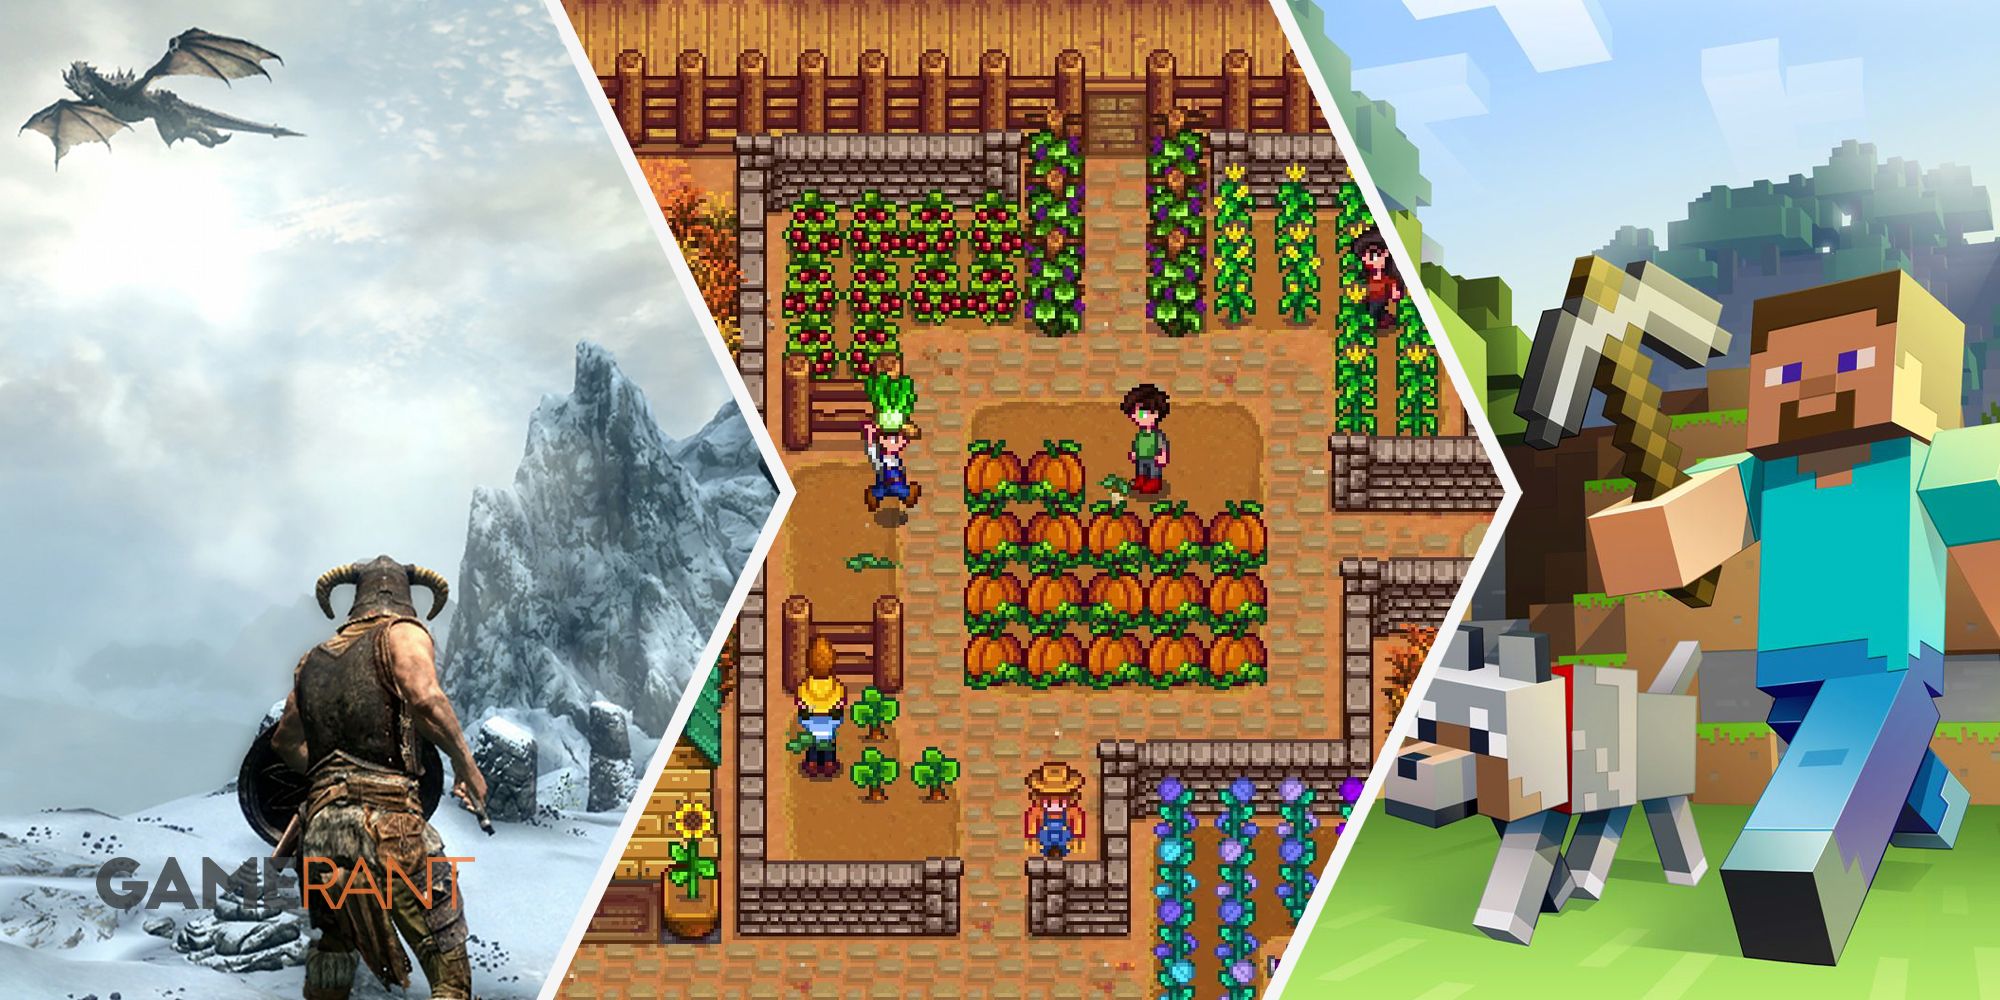 Персонаж Skyrim Dragonborn, собирающийся сразиться с драконом слева, ферма Stardew Valley с обильным урожаем посередине, Minecraft Steve справа